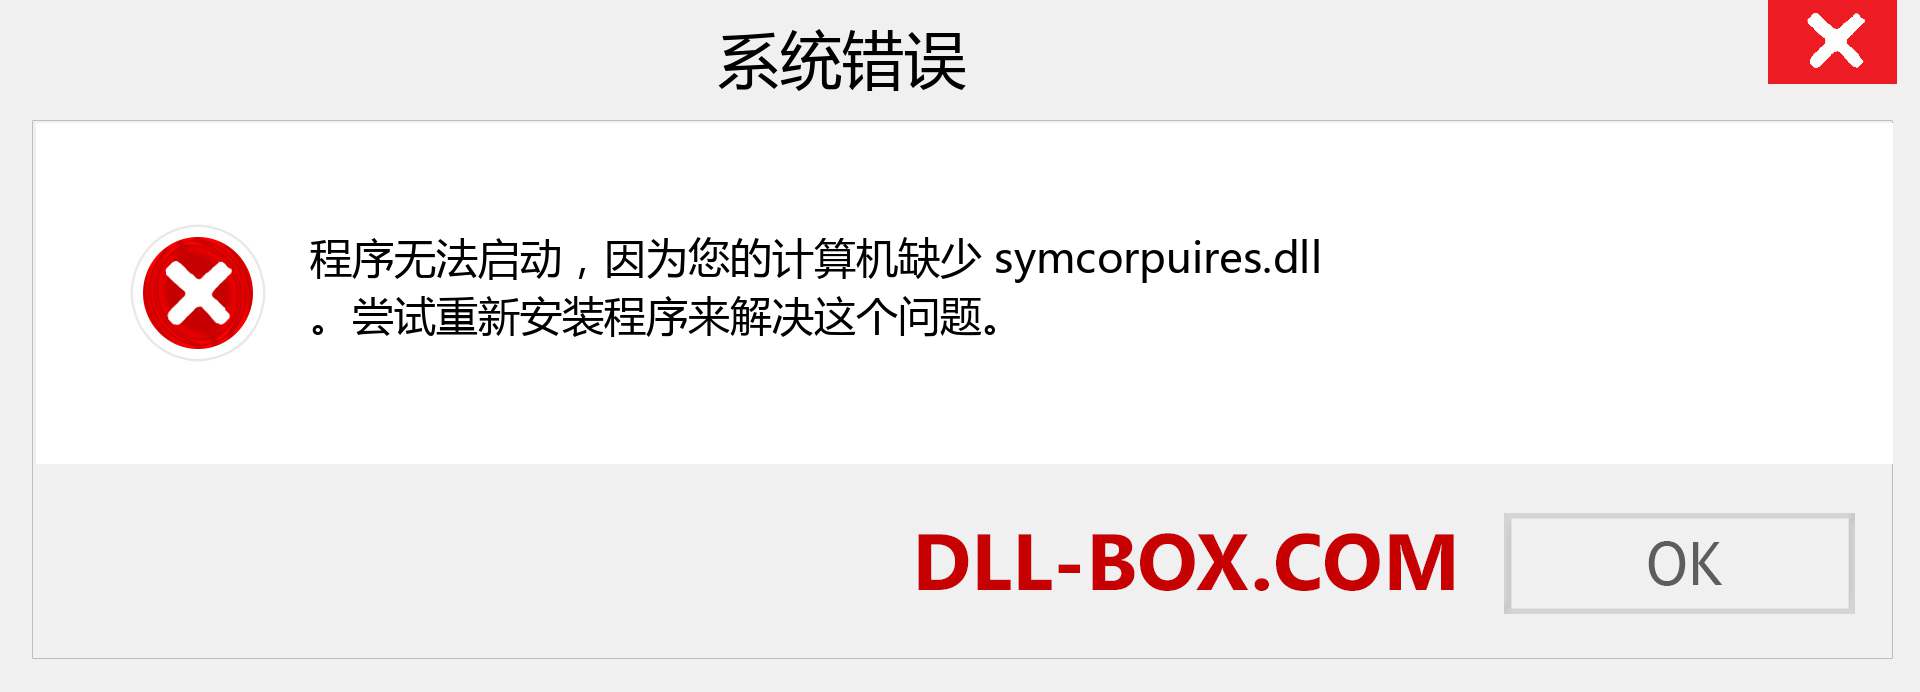 symcorpuires.dll 文件丢失？。 适用于 Windows 7、8、10 的下载 - 修复 Windows、照片、图像上的 symcorpuires dll 丢失错误